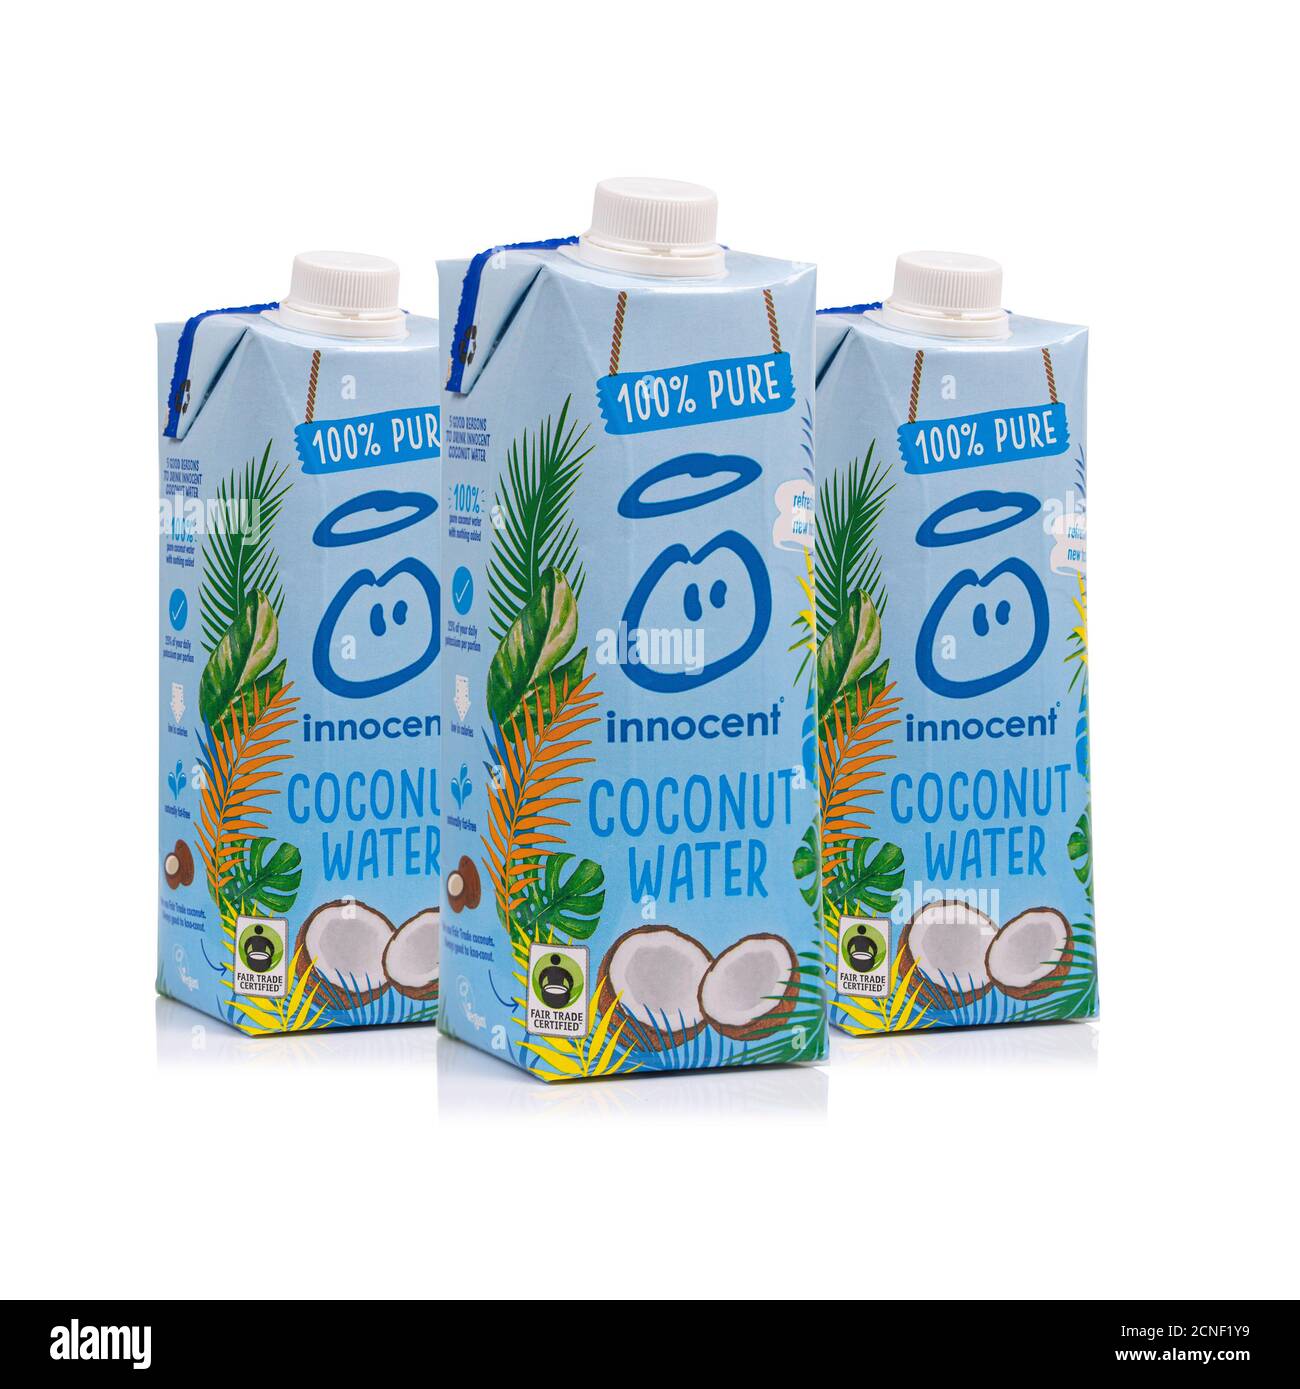 SWINDON, Royaume-Uni - 18 SEPTEMBRE 2020 : eau à la noix de coco pure 100 % innocente (certifiée Fair Trade) Banque D'Images